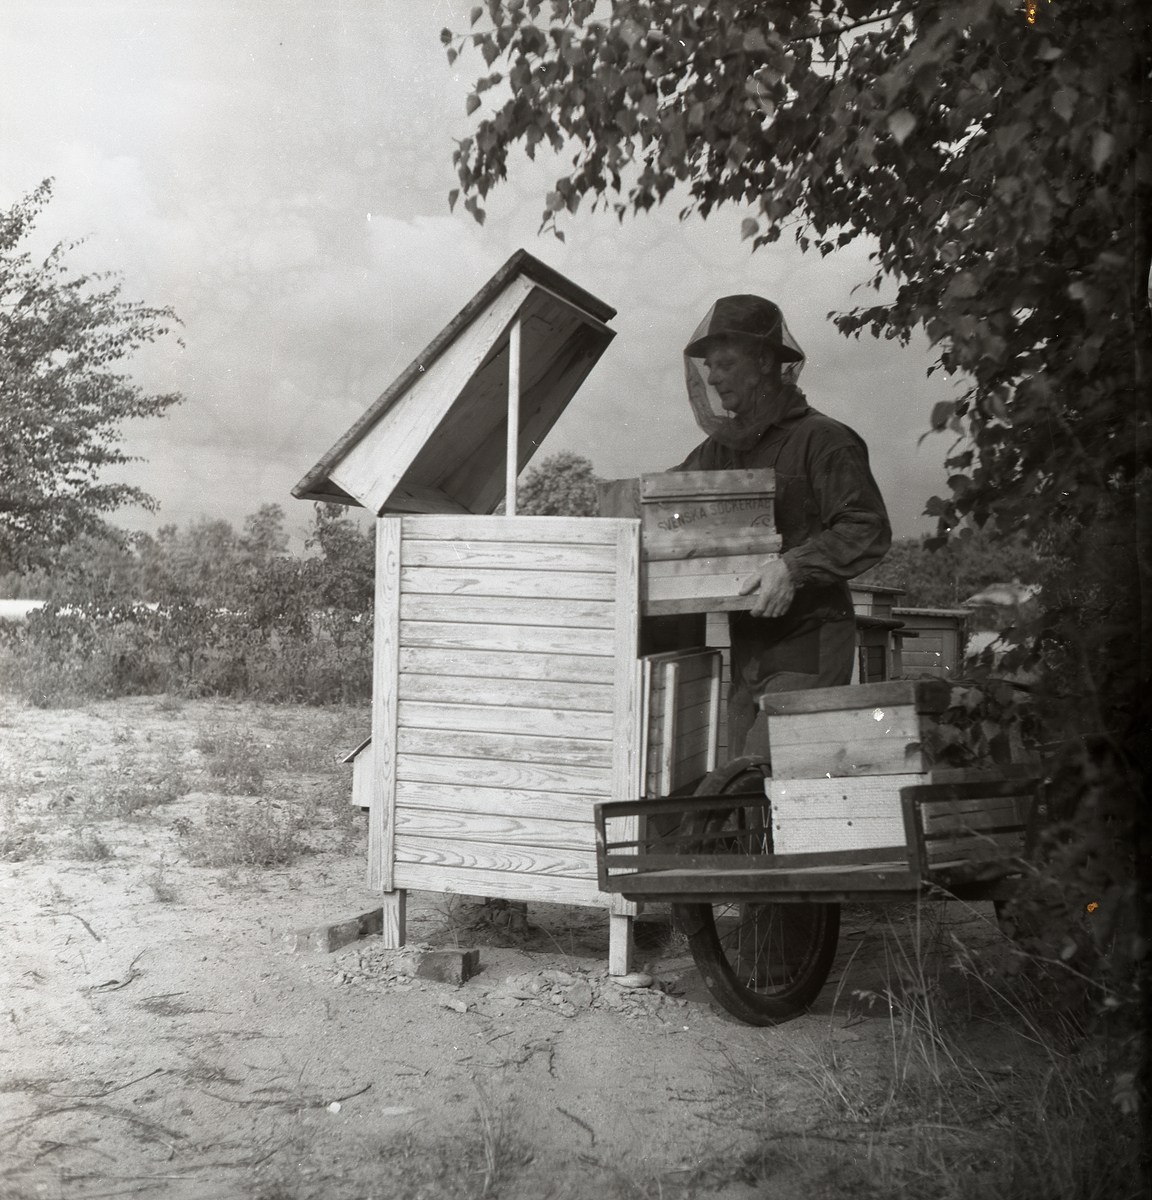 Biodlare arbetar vid bikupa, iklädd skyddskläder, Årsunda 1950.